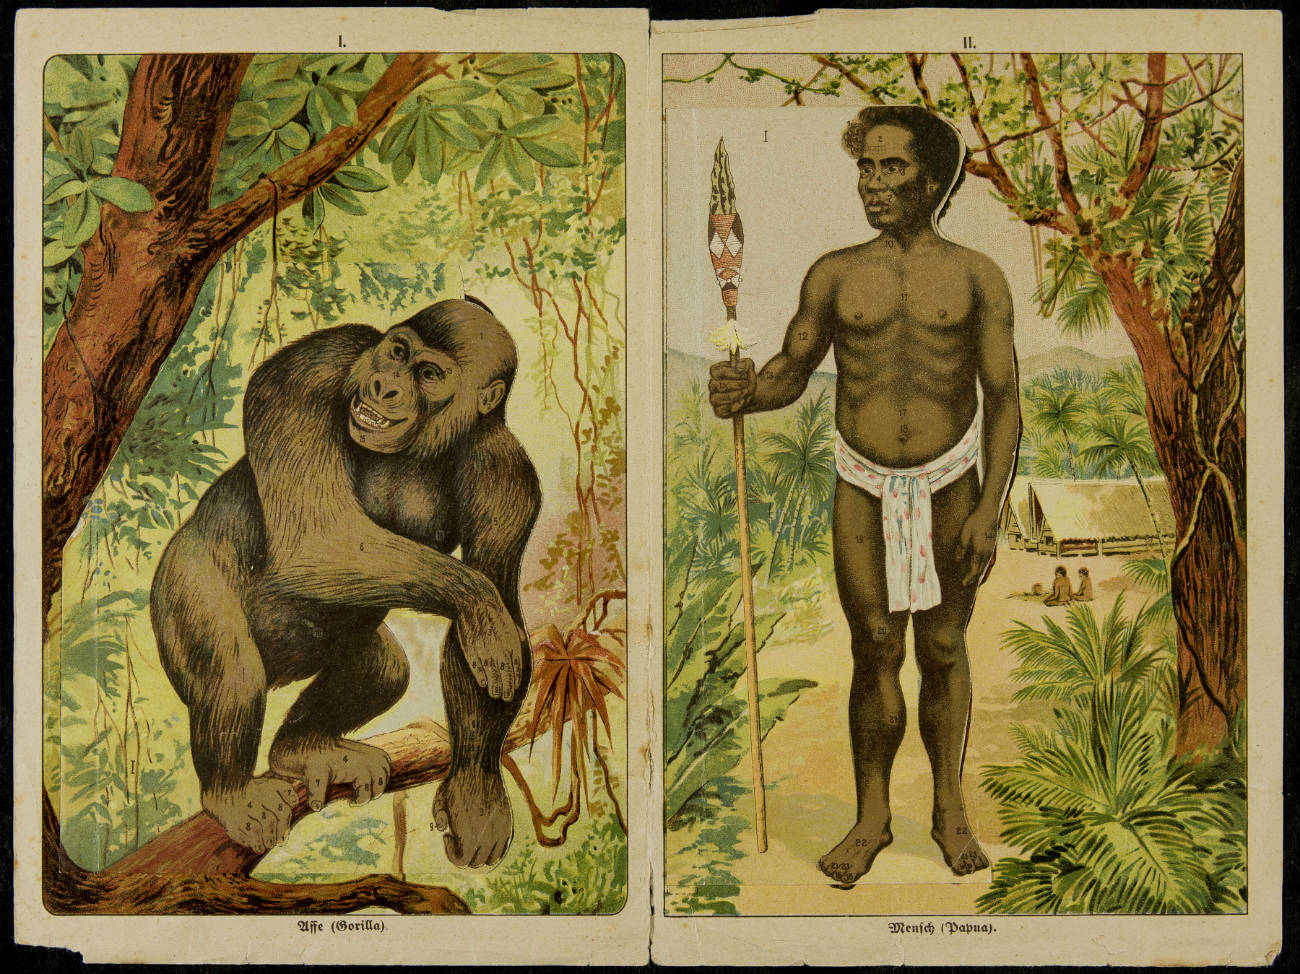 De afstamming van de aap, na Darwins Origin of Species een geliefd thema in populair wetenschappelijke boeken (Eine vergleichende Ubersicht des inneren Körperbaues von Affe und Mensch, ca. 1900, part. coll.)